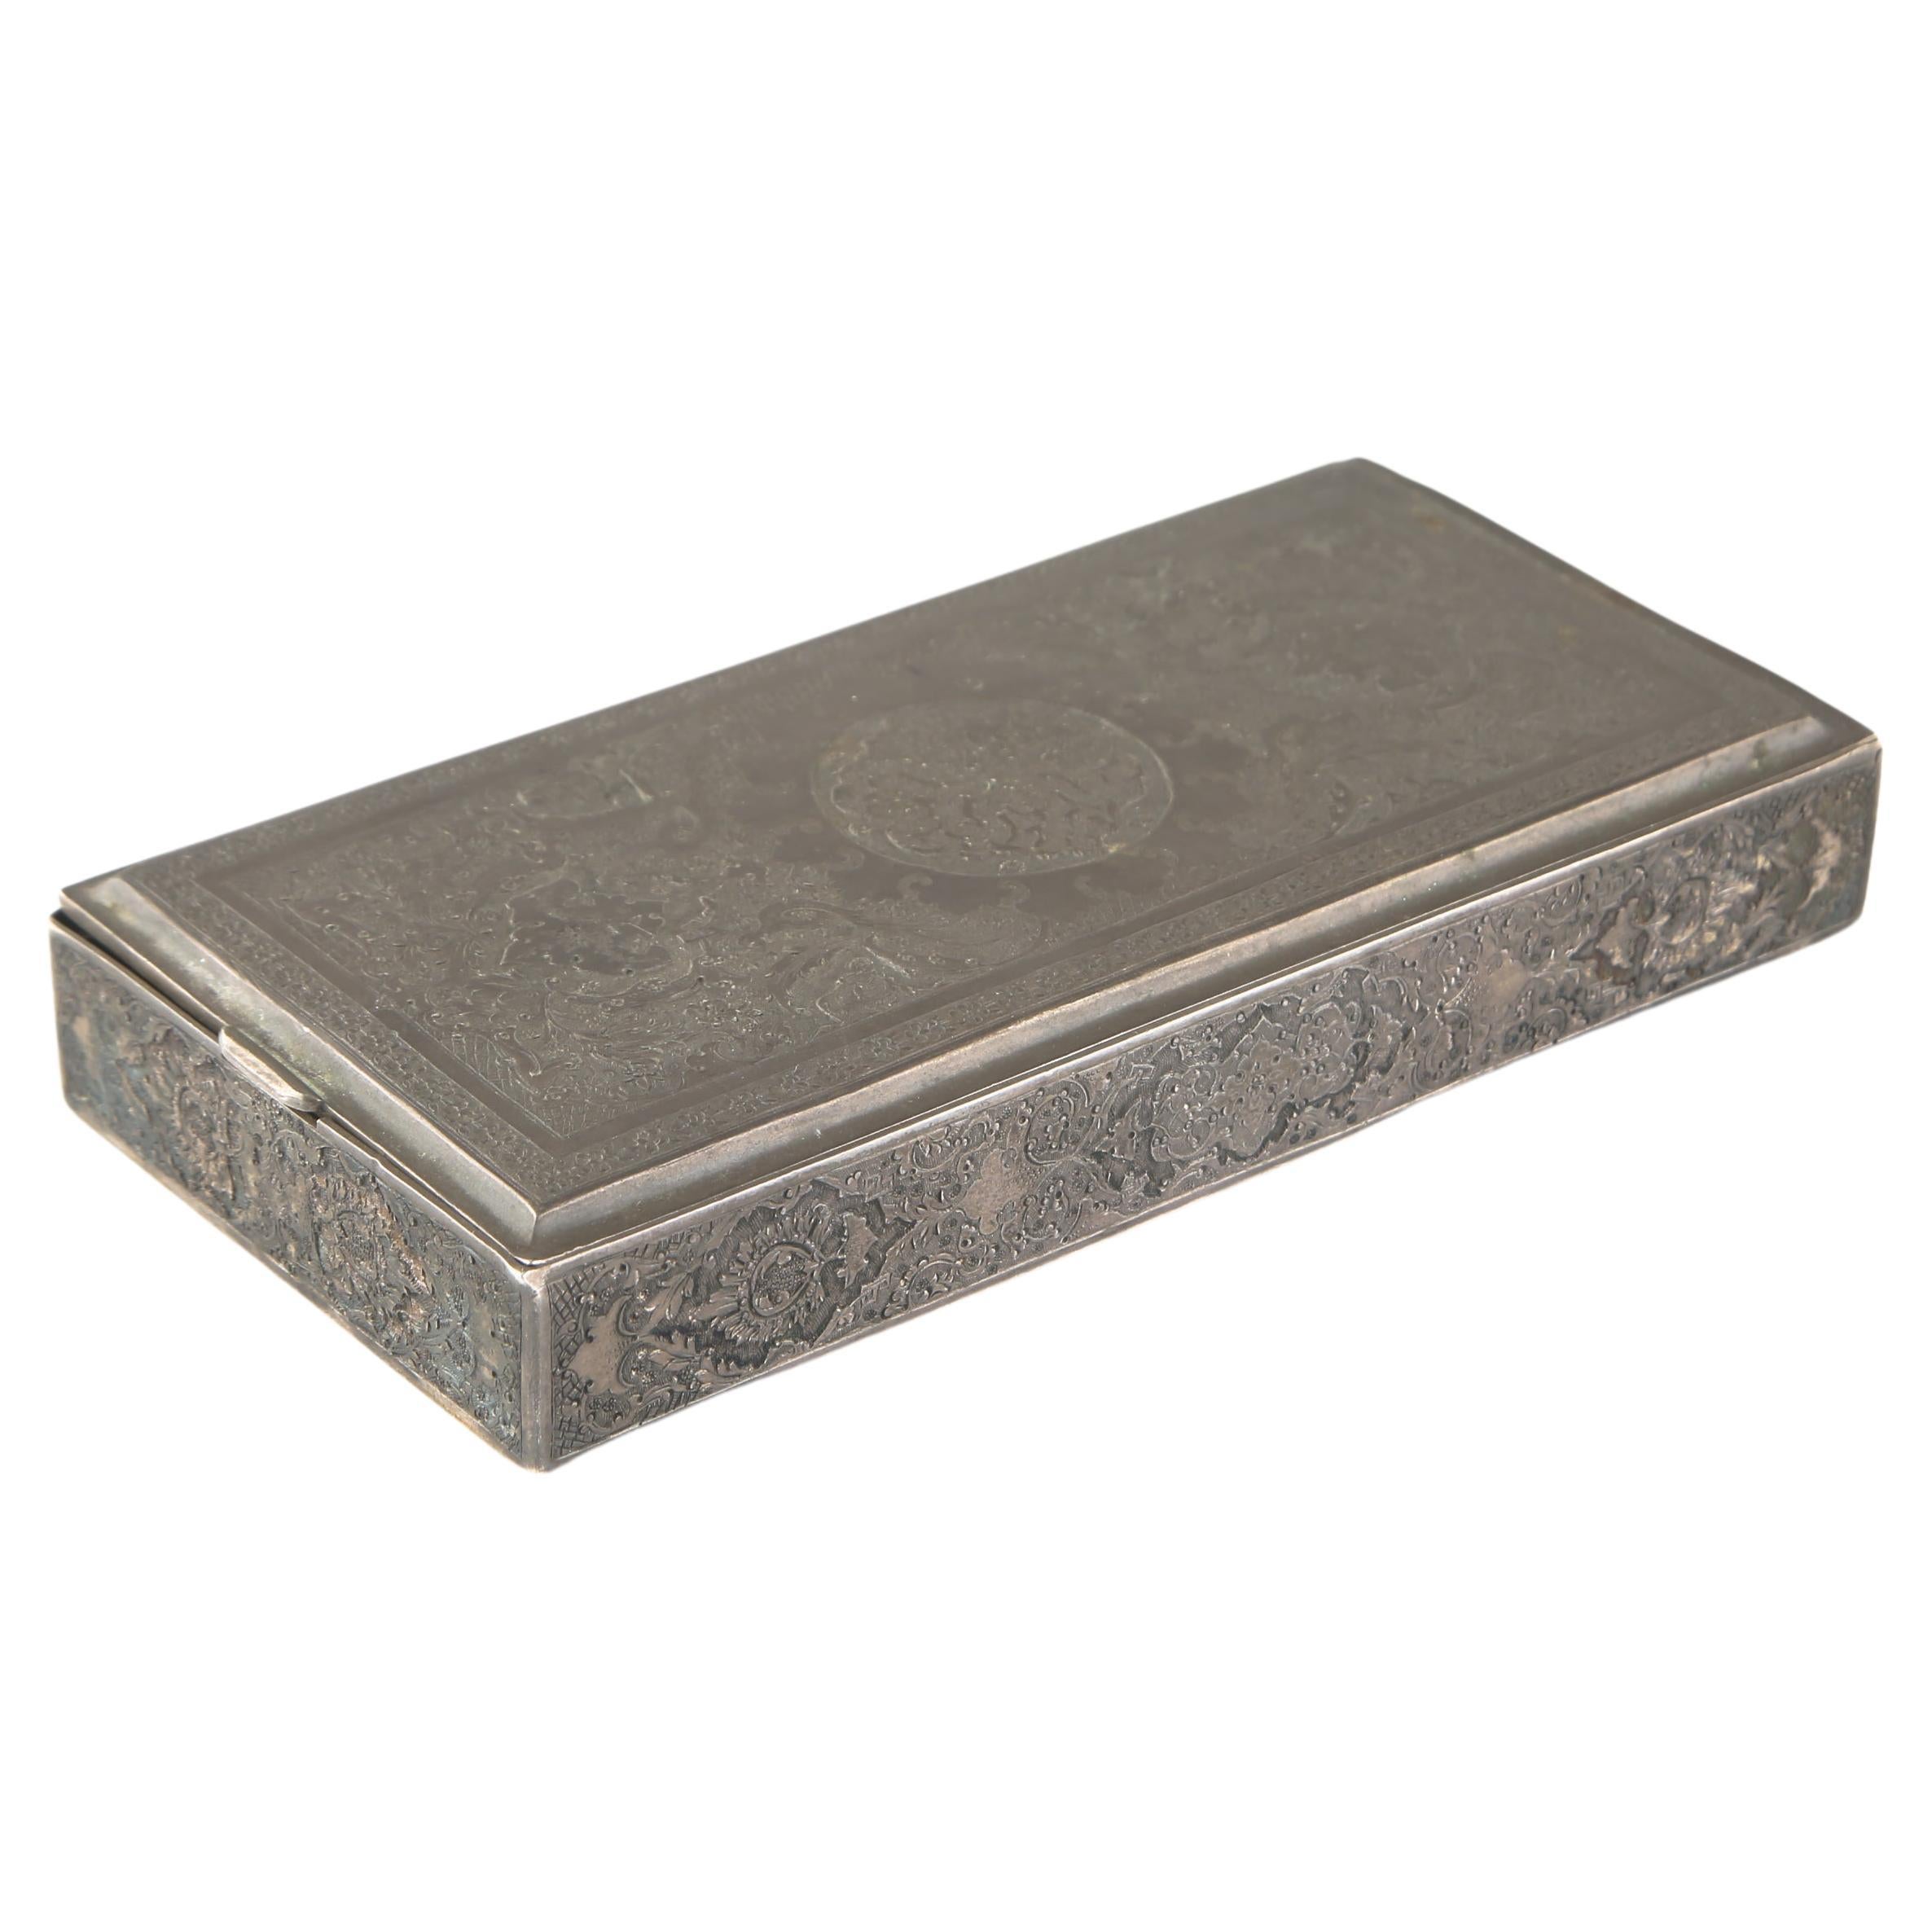 Belle boîte persane ancienne gravée à charnières en argent massif - poinçonnée (275 g)